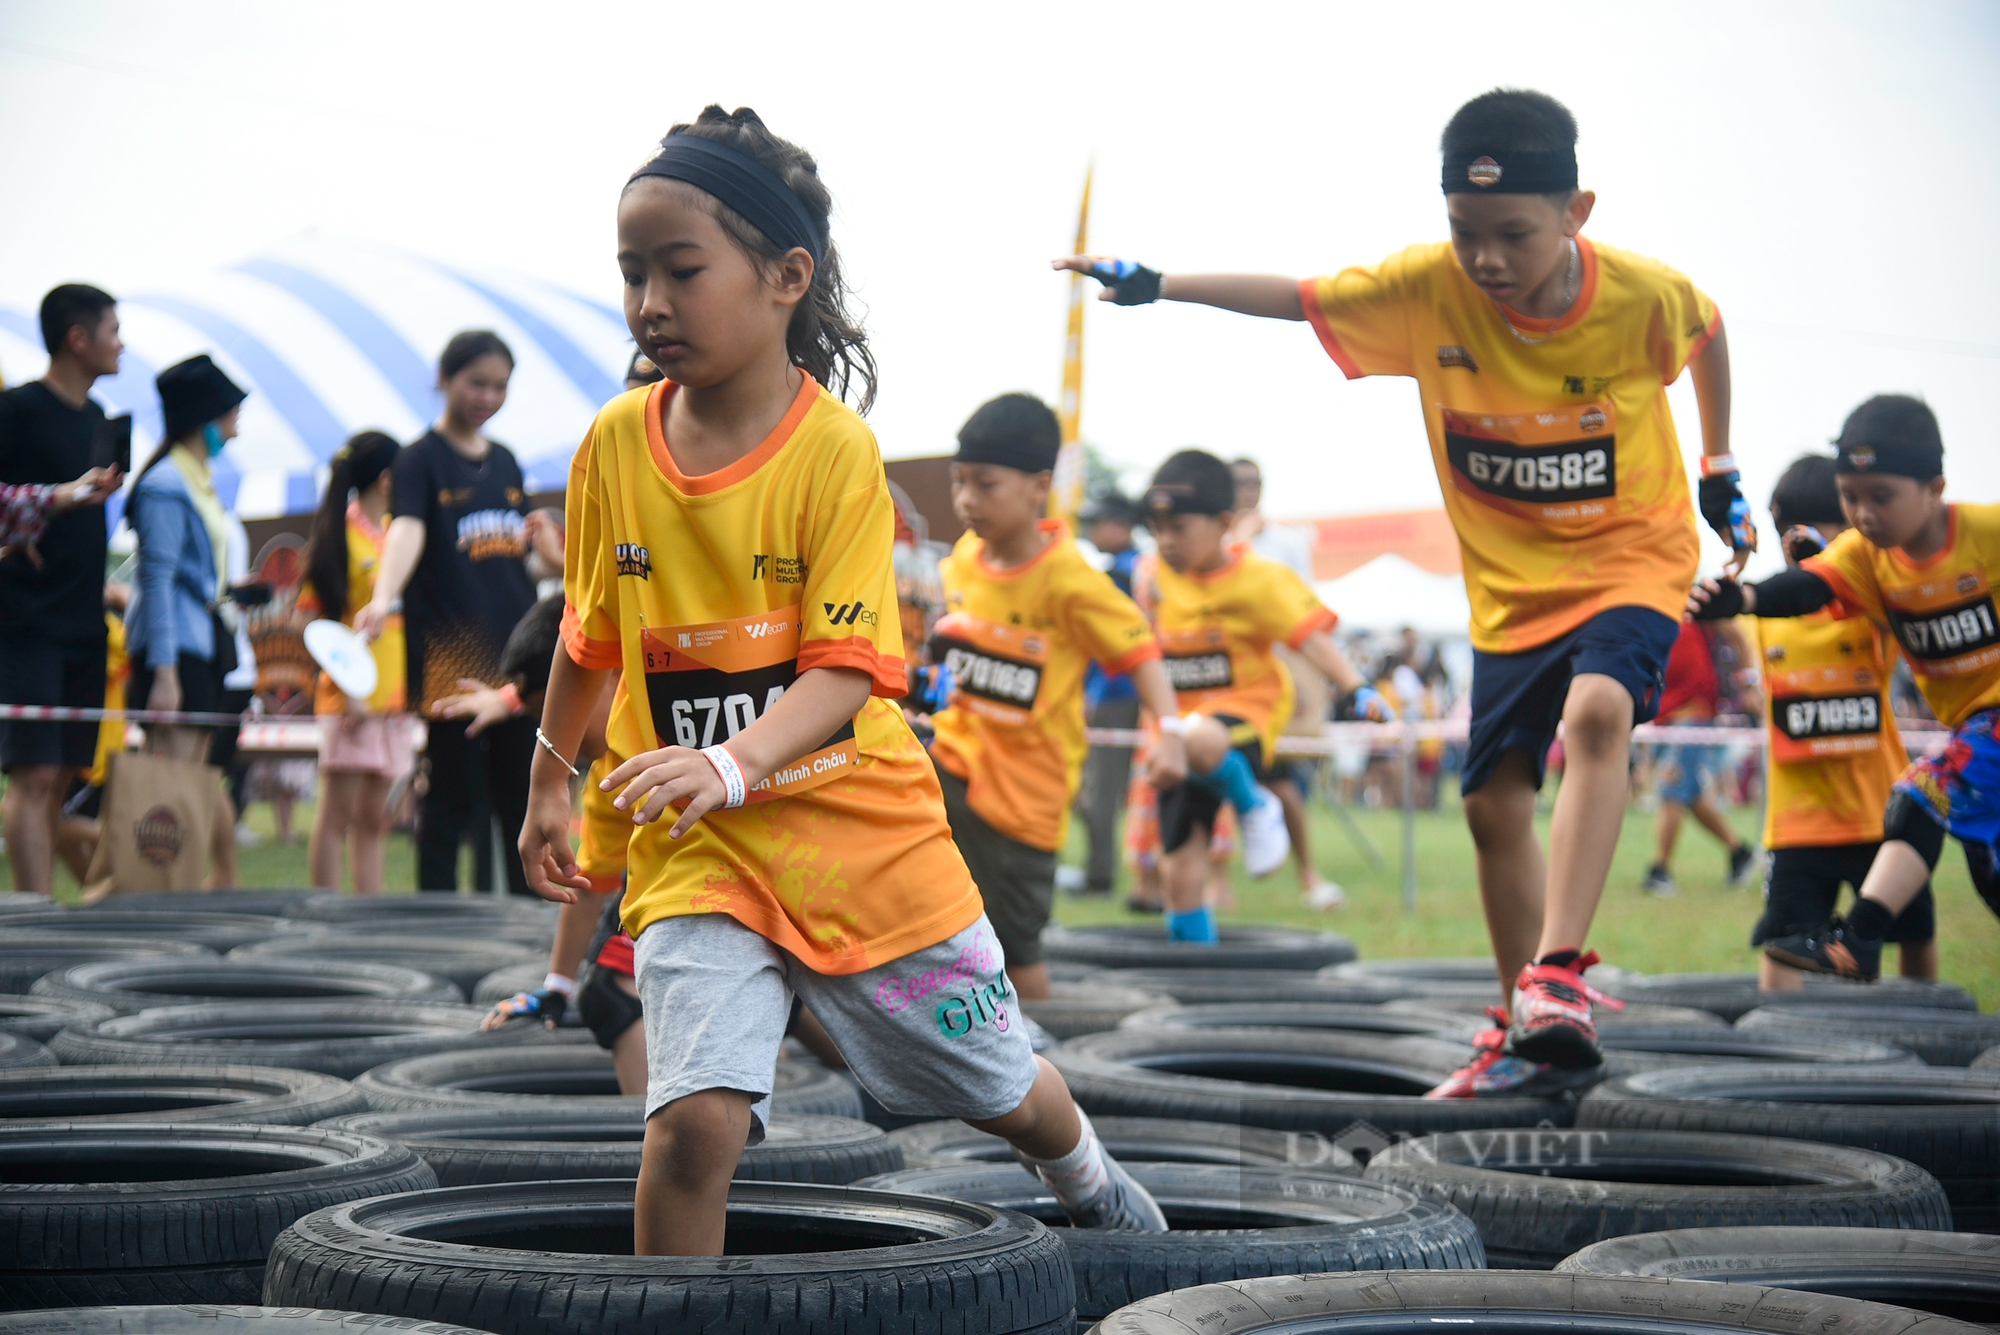 Hơn 1.500 runner nhí tham gia giải đấu vượt chướng ngại vật được tổ chức tại Hà Nội - Ảnh 5.